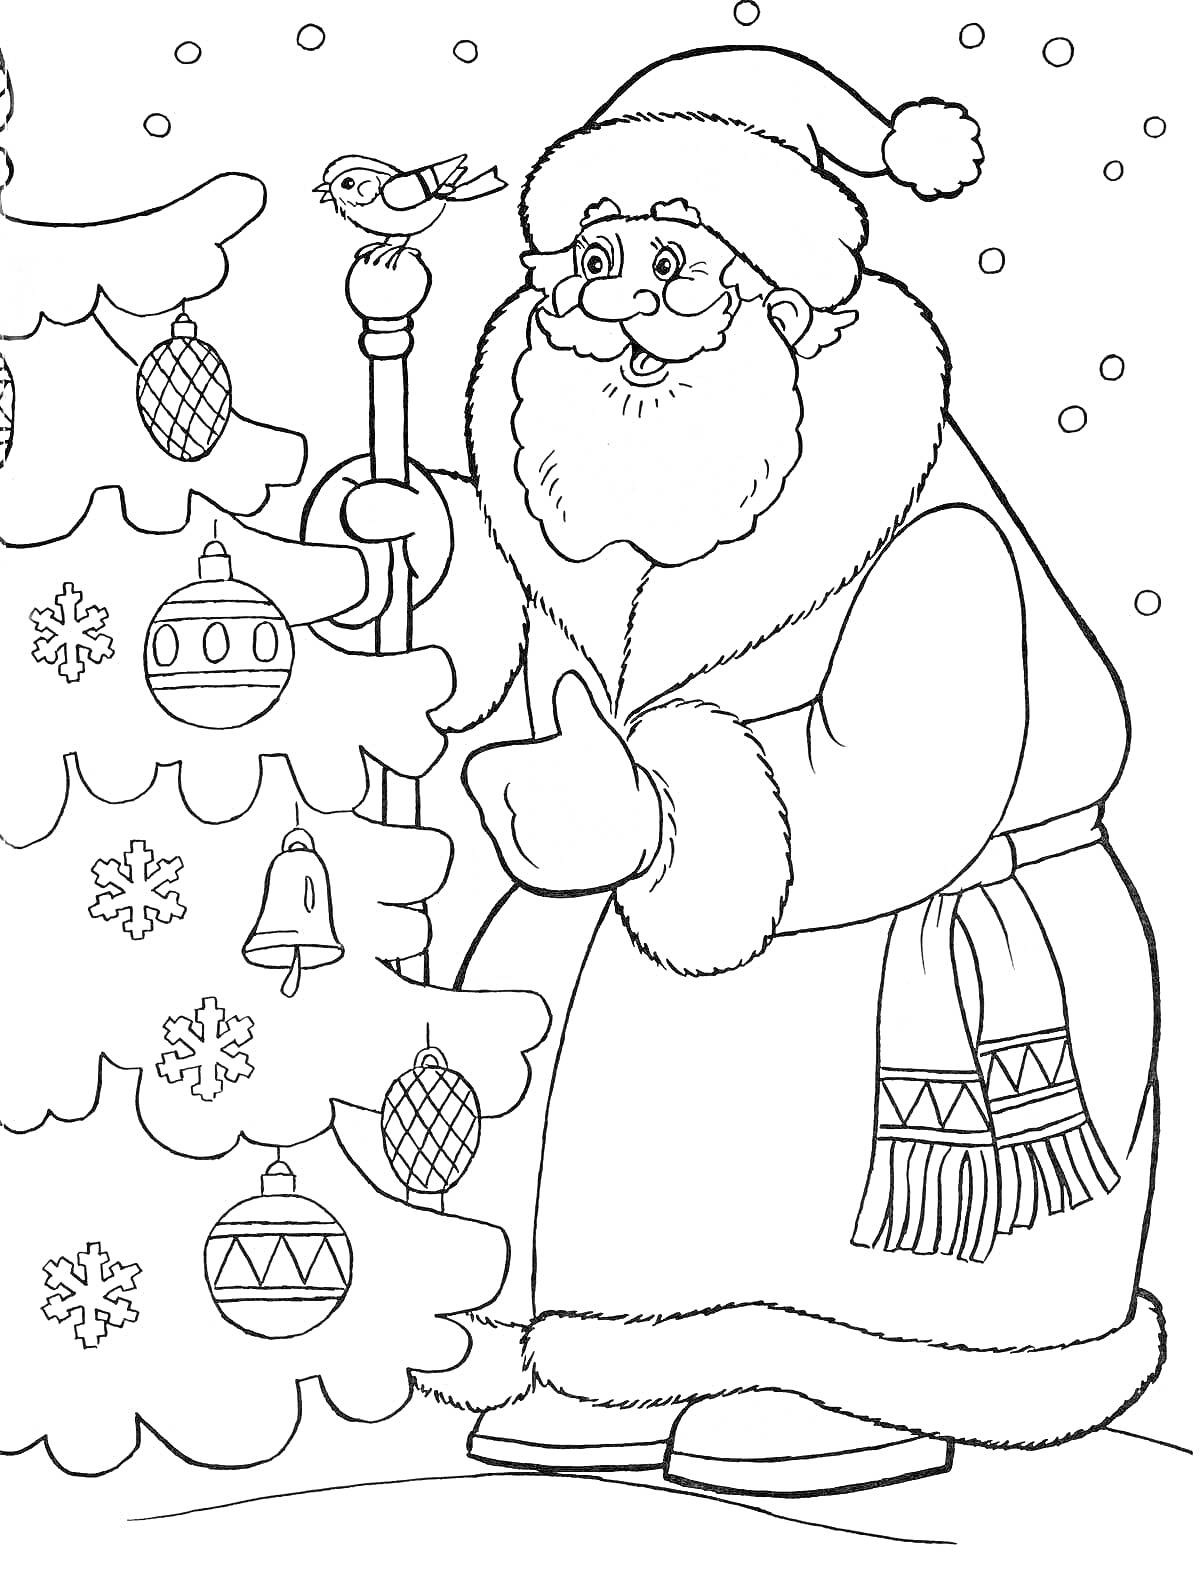 Раскраска Дед Мороз рядом с новогодней ёлкой, украшенной шарами, колокольчиками и снежинками, на ёлке сидит птица, идёт снег